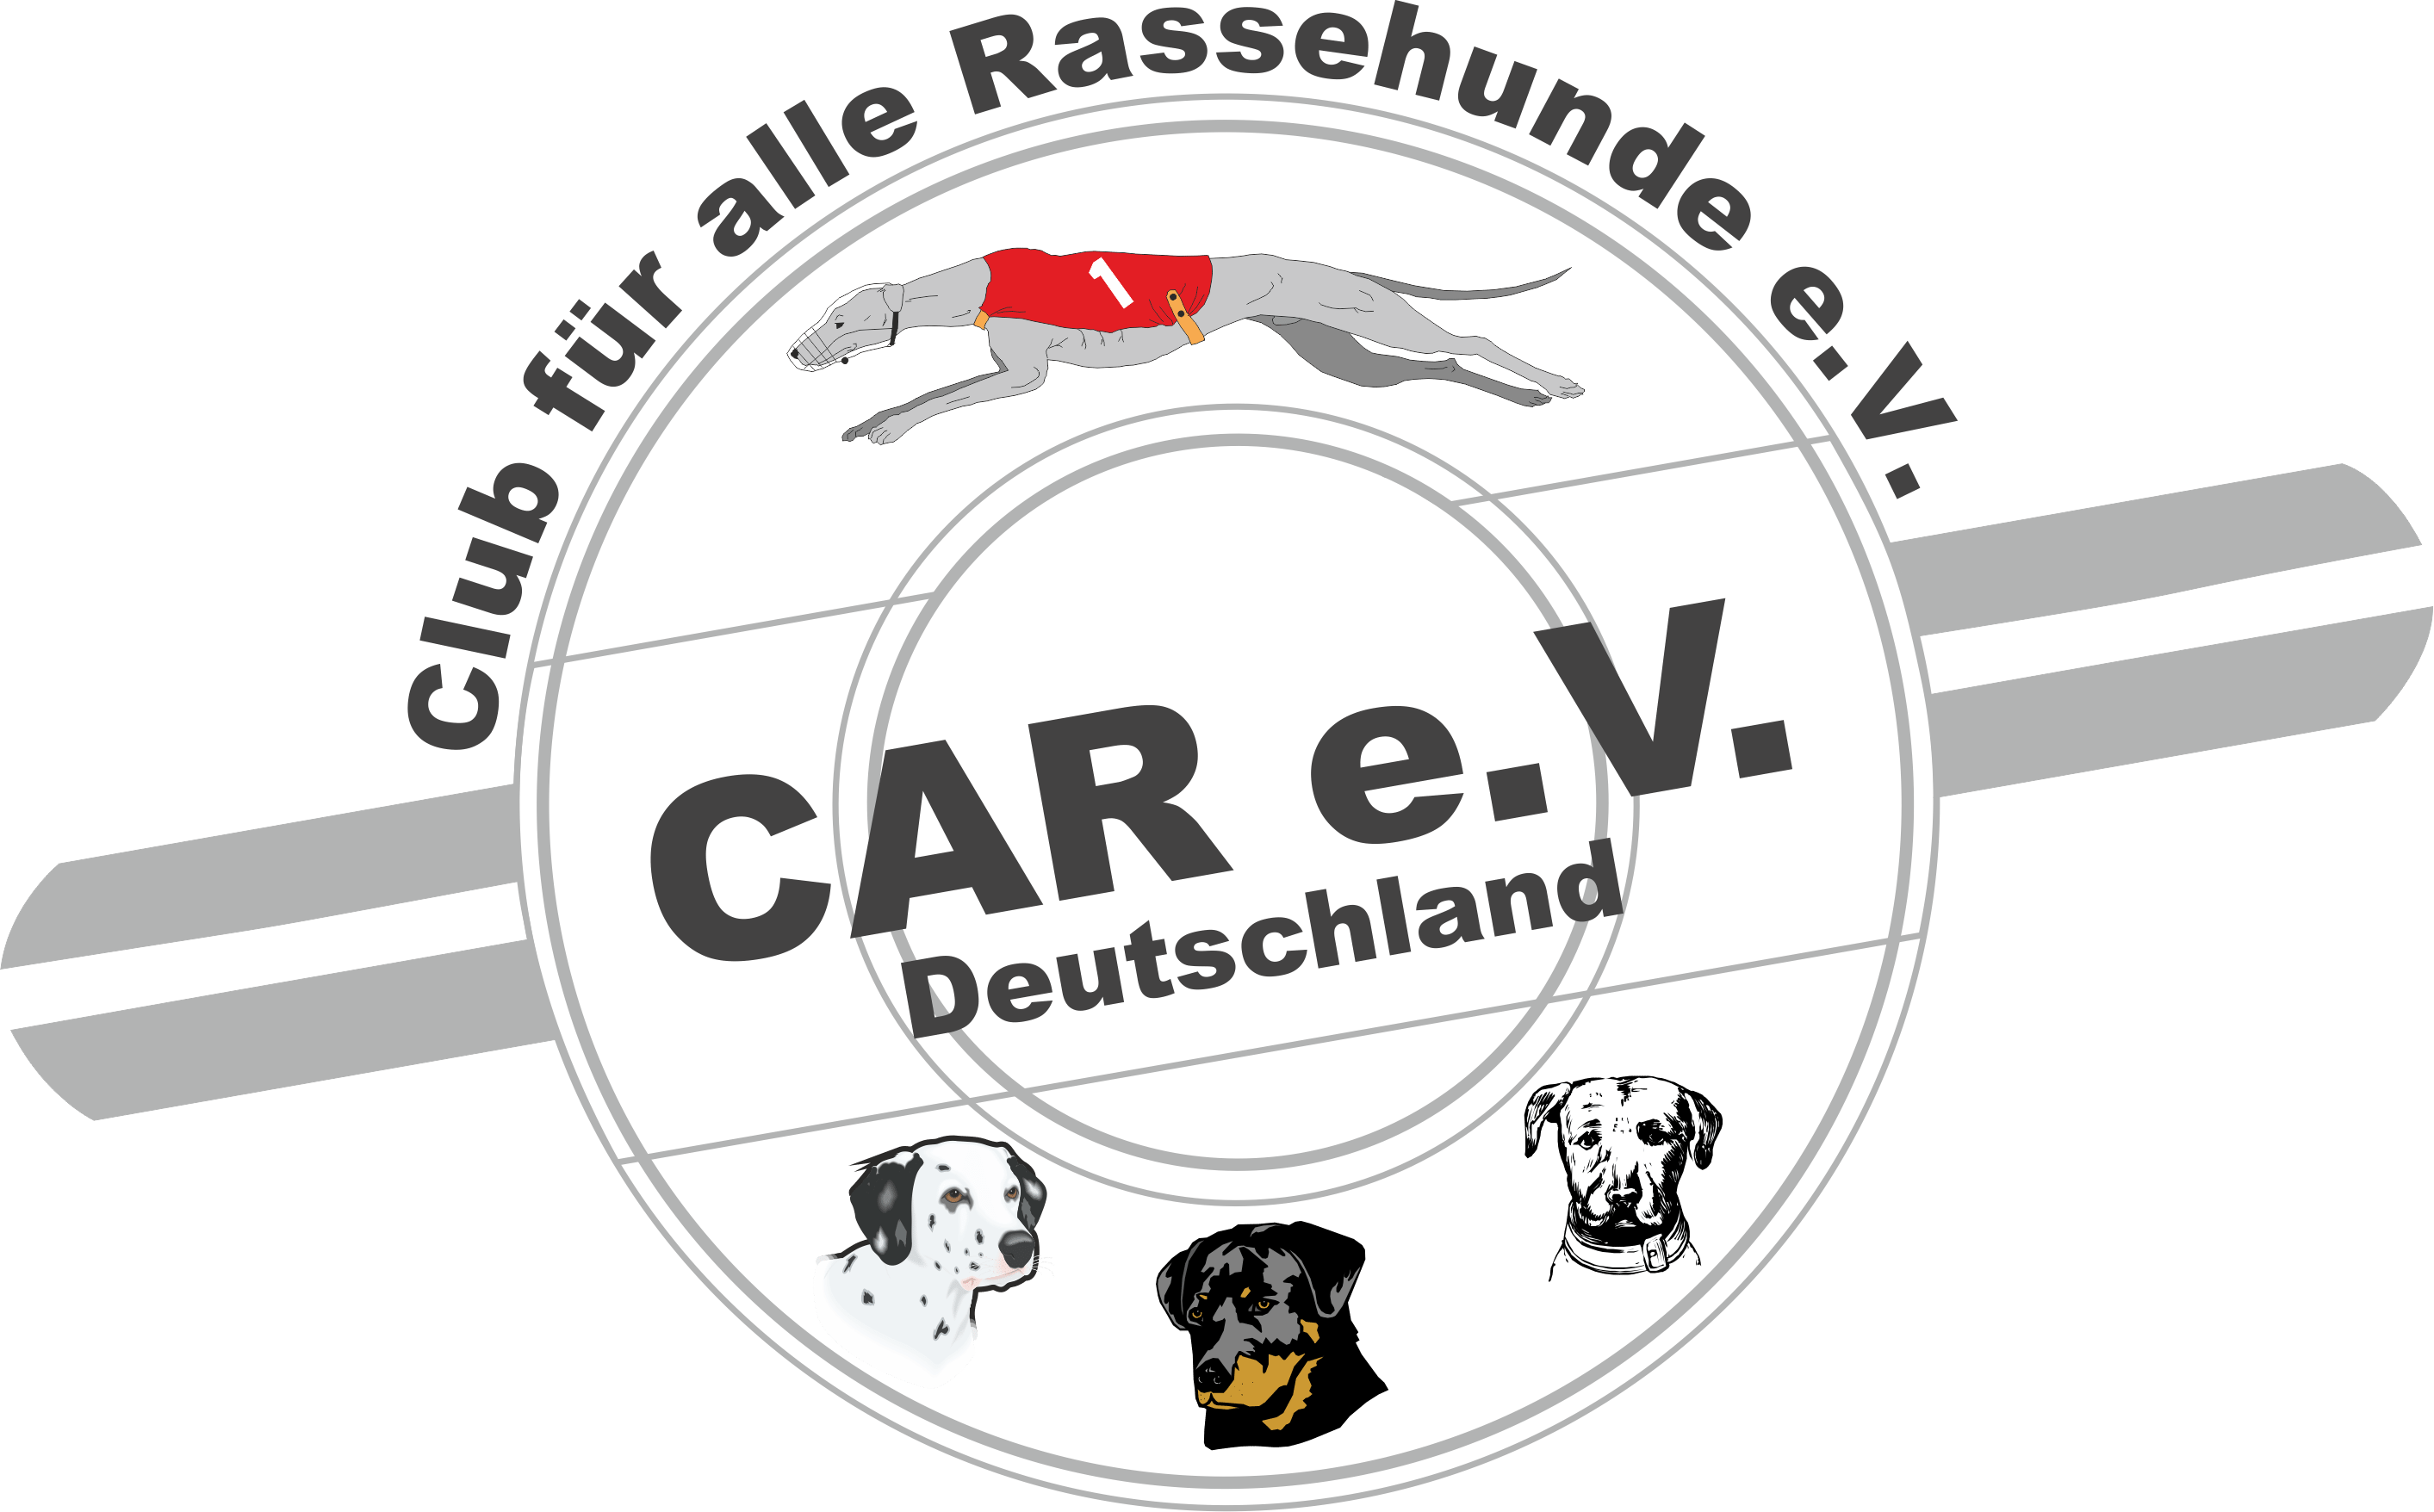 CAR e.V. Deutschland. Der Club für alle Rassehunde e.V. Deutschland